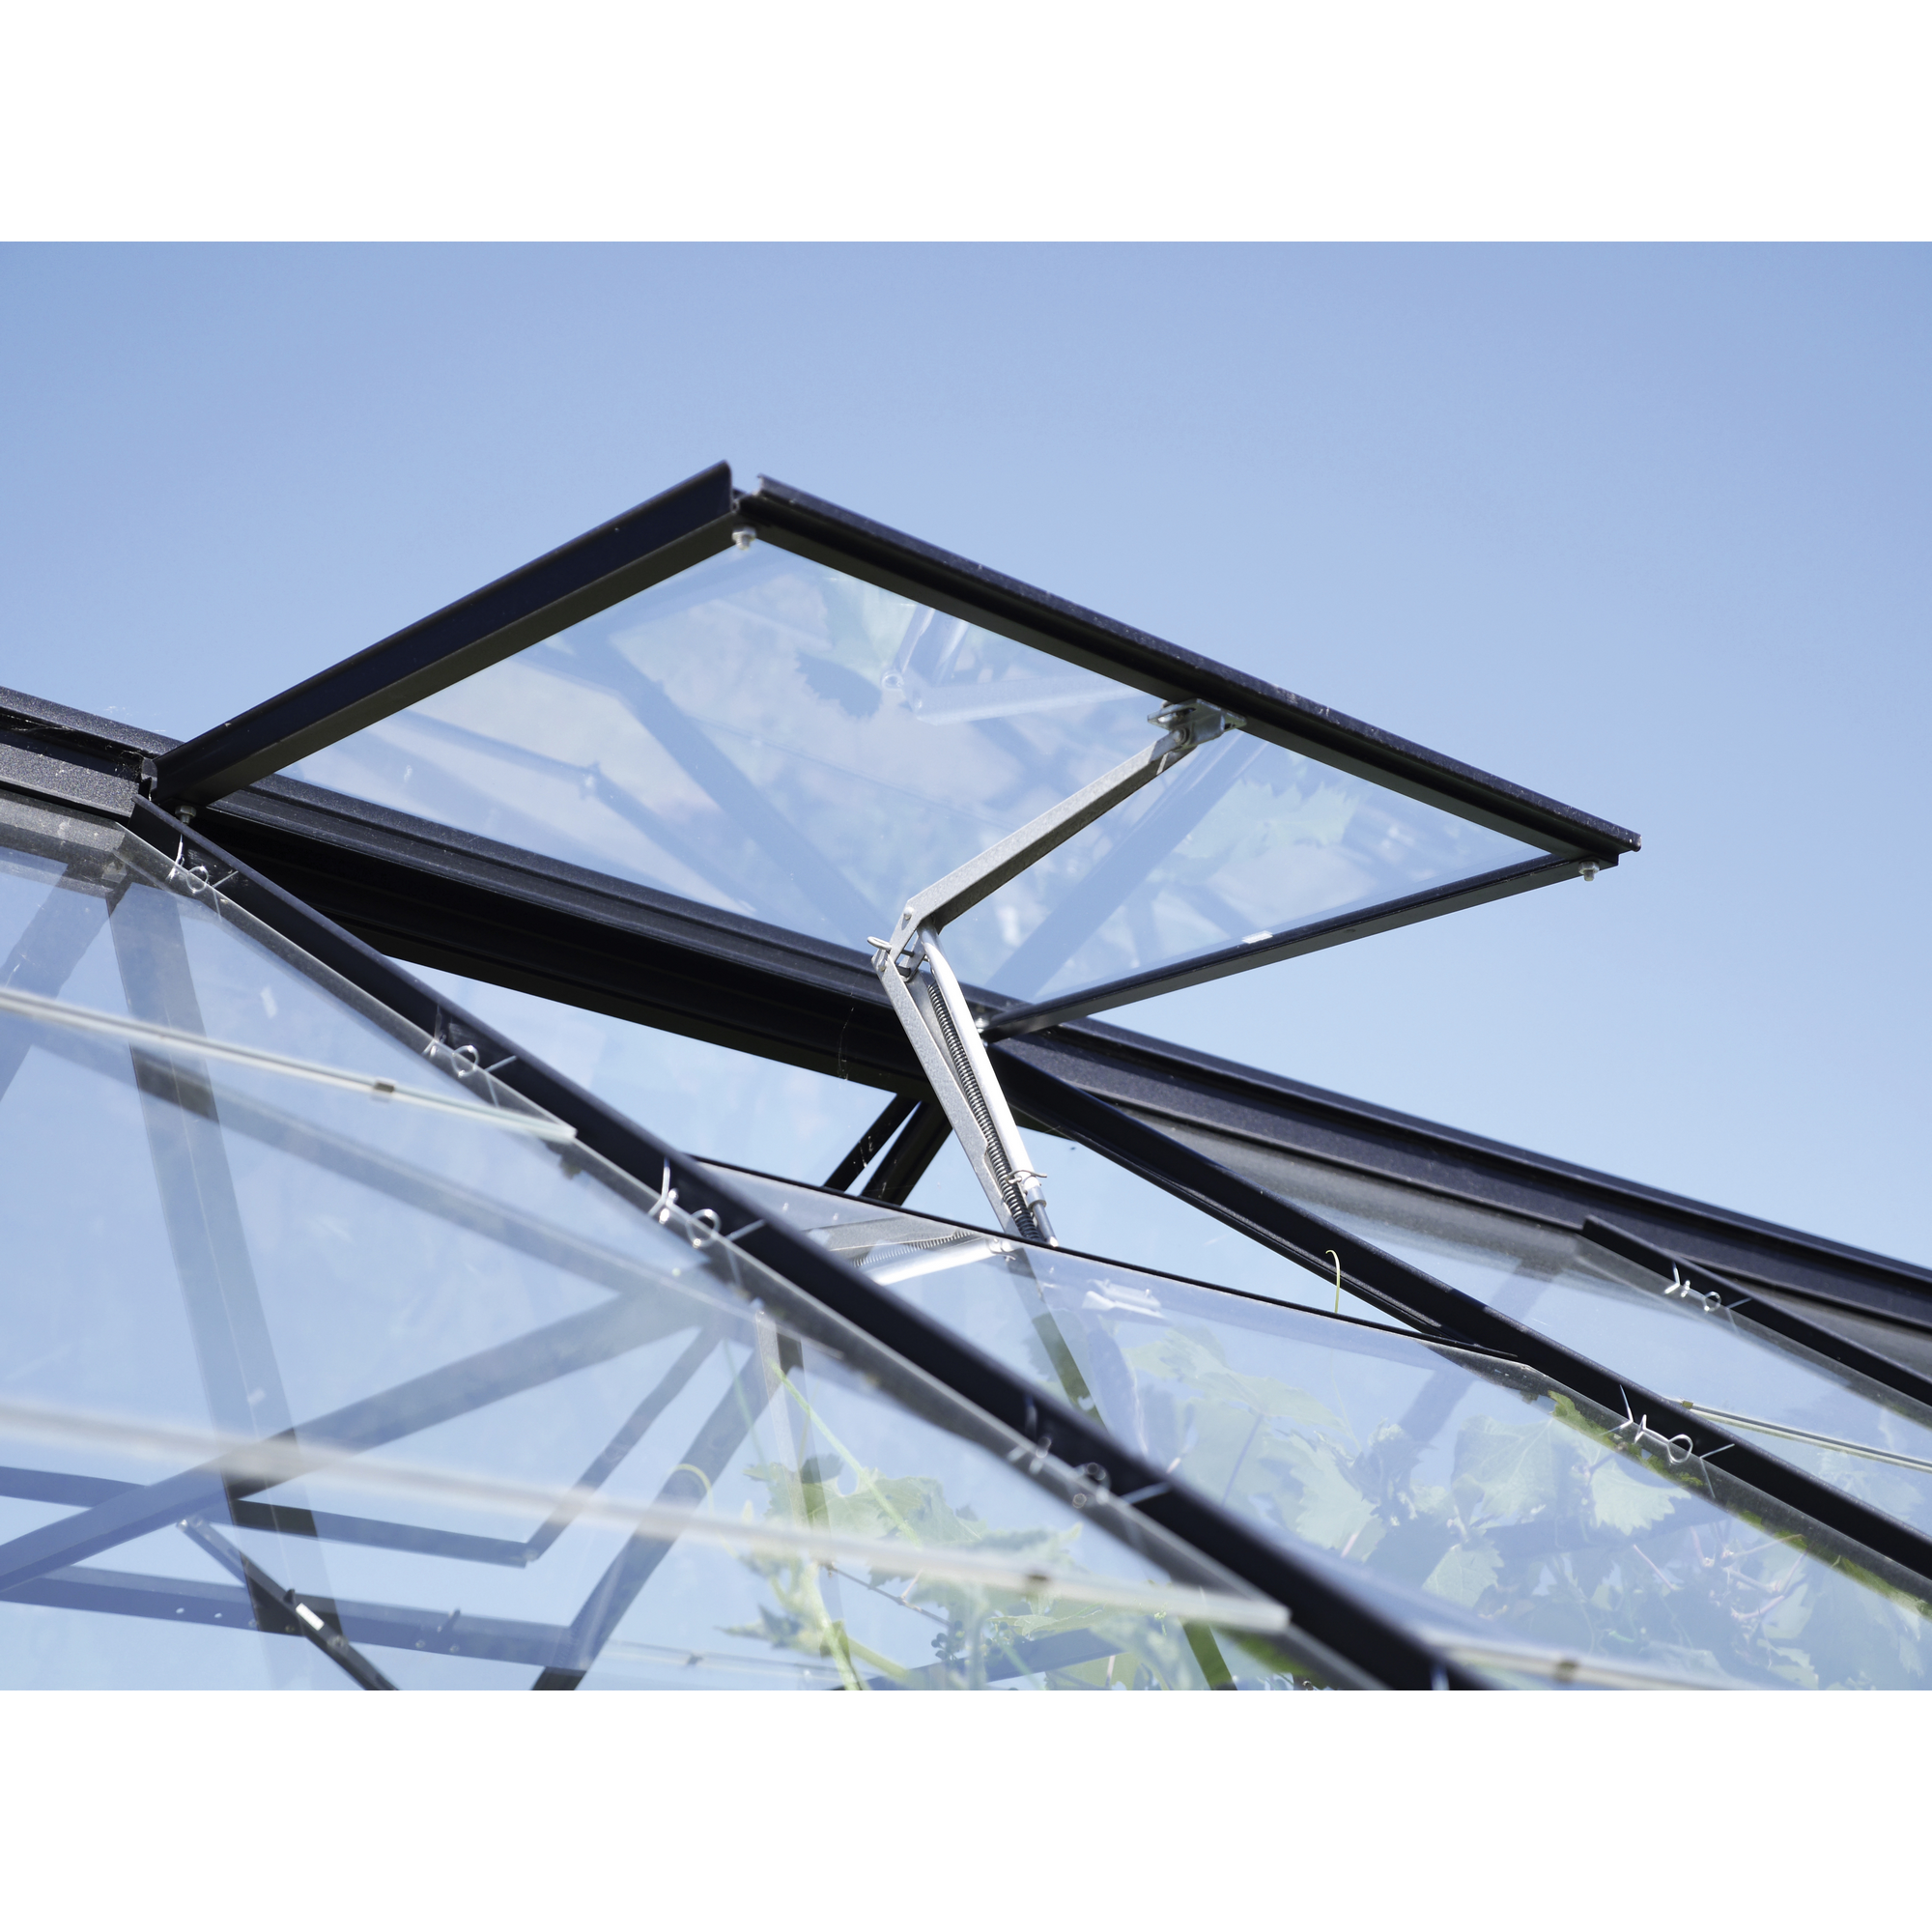 Dachfenster für Gewächshäuser, Aluminium, schwarz 62 x 55 cm + product picture